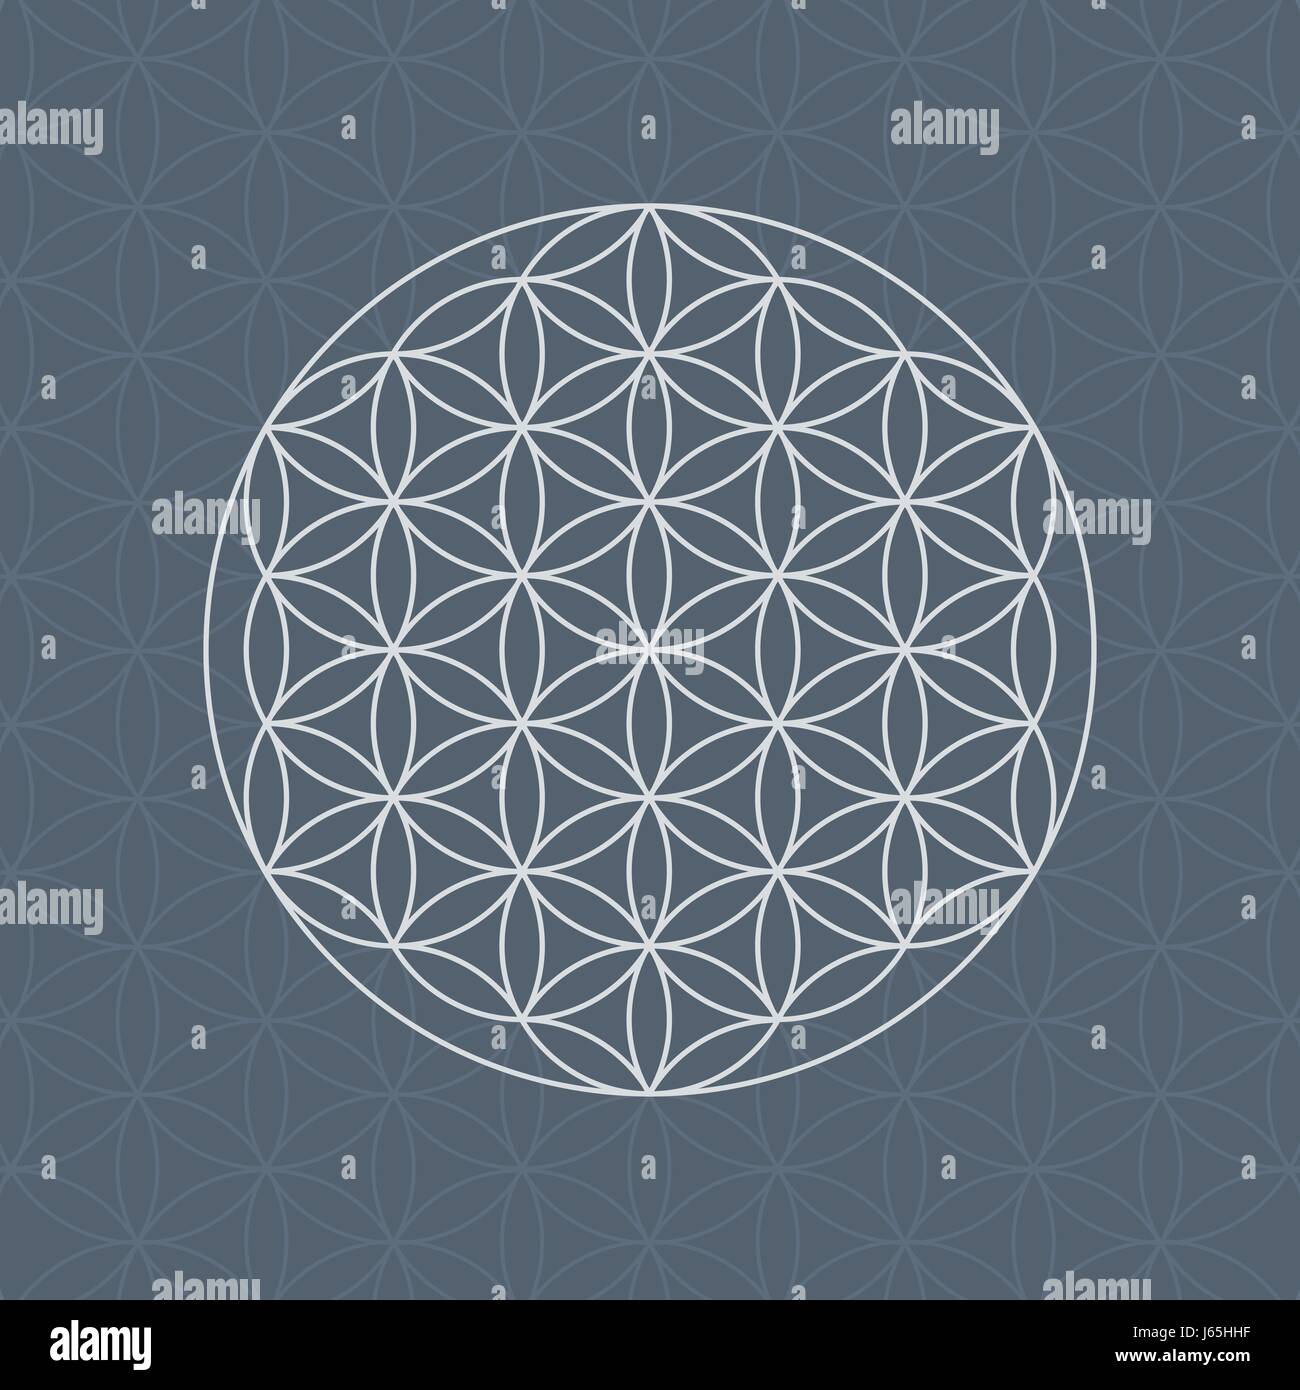 La flor de la vida de la geometría sagrada patrón con círculos superpuestos Ilustración del Vector